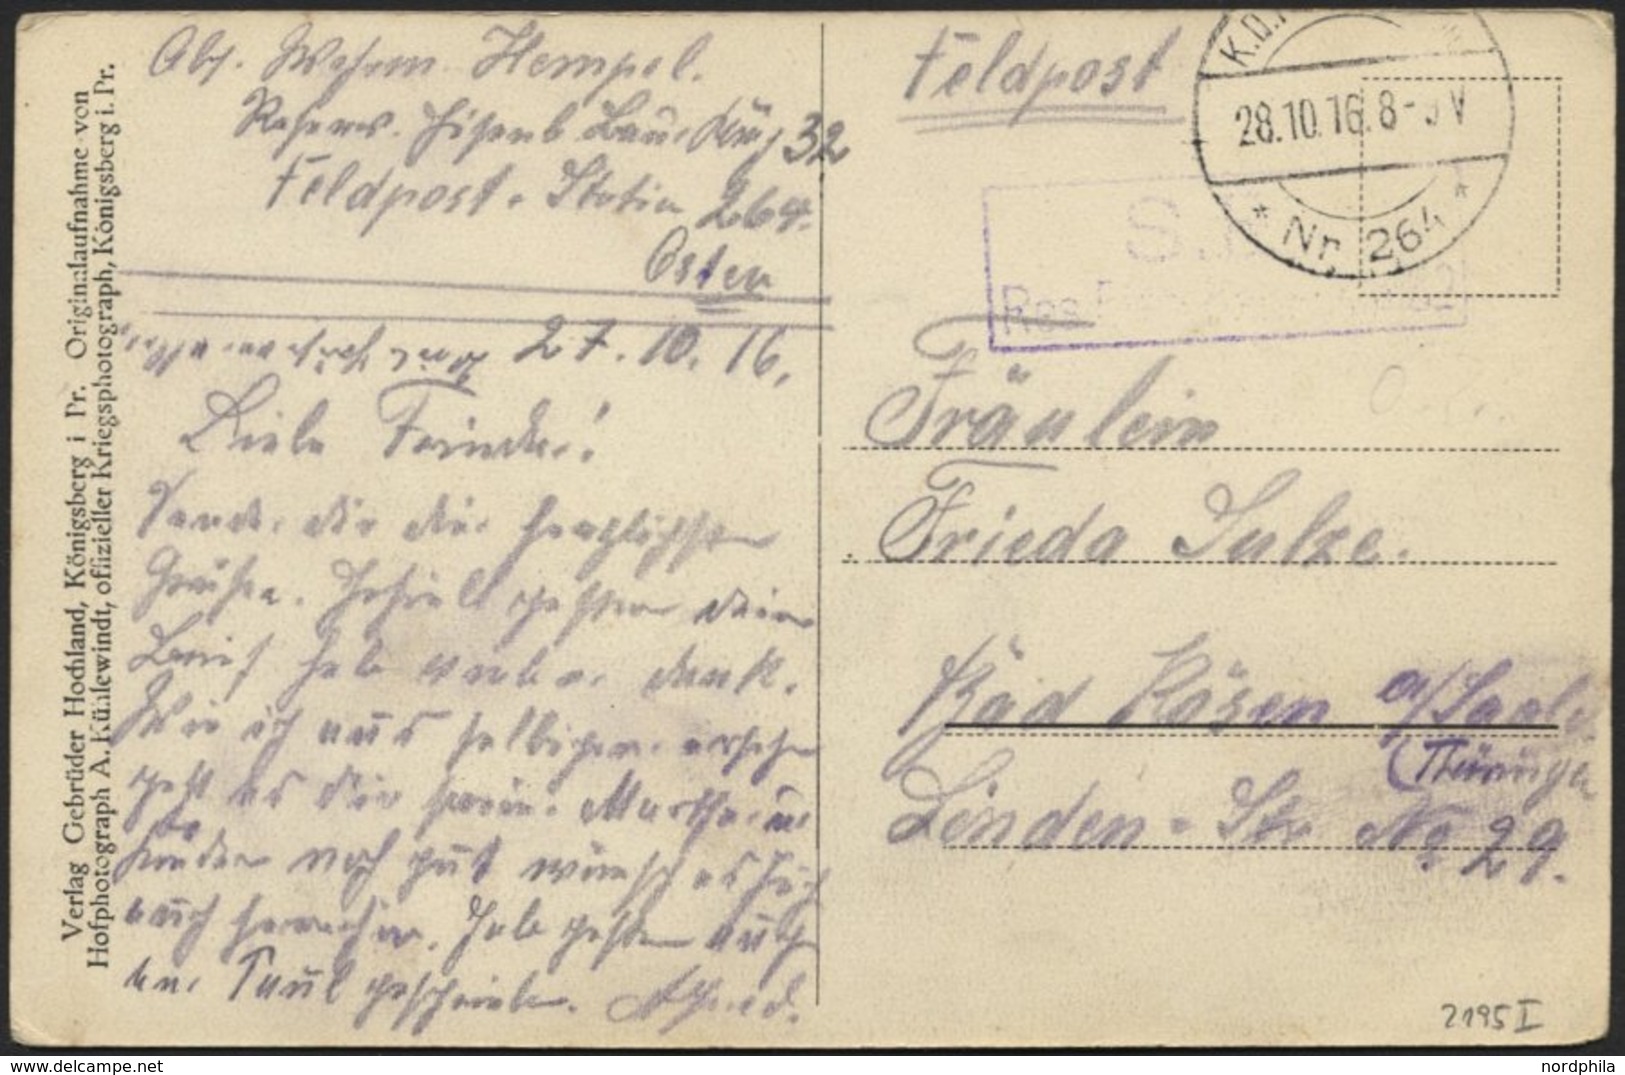 DT. FP IM BALTIKUM 1914/18 K.D. FELDPOSTSTATION NR. 264 **, 28.10.16, Auf Ansichtskarte (Der Markt In Janiszky In Kurlan - Letonia